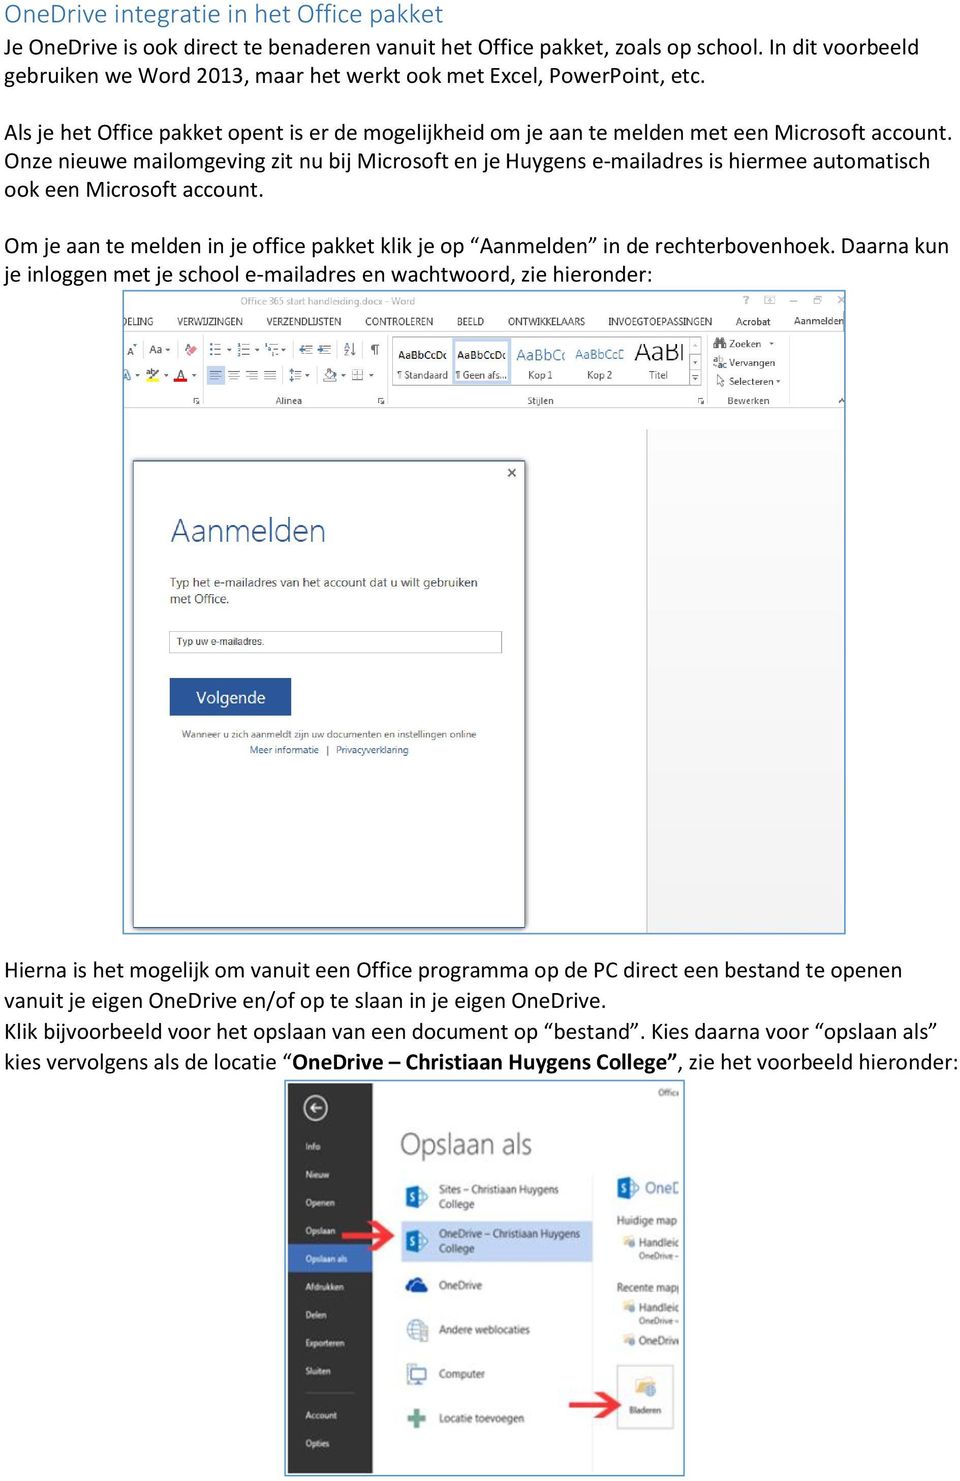 Onze nieuwe mailomgeving zit nu bij Microsoft en je Huygens e-mailadres is hiermee automatisch ook een Microsoft account.